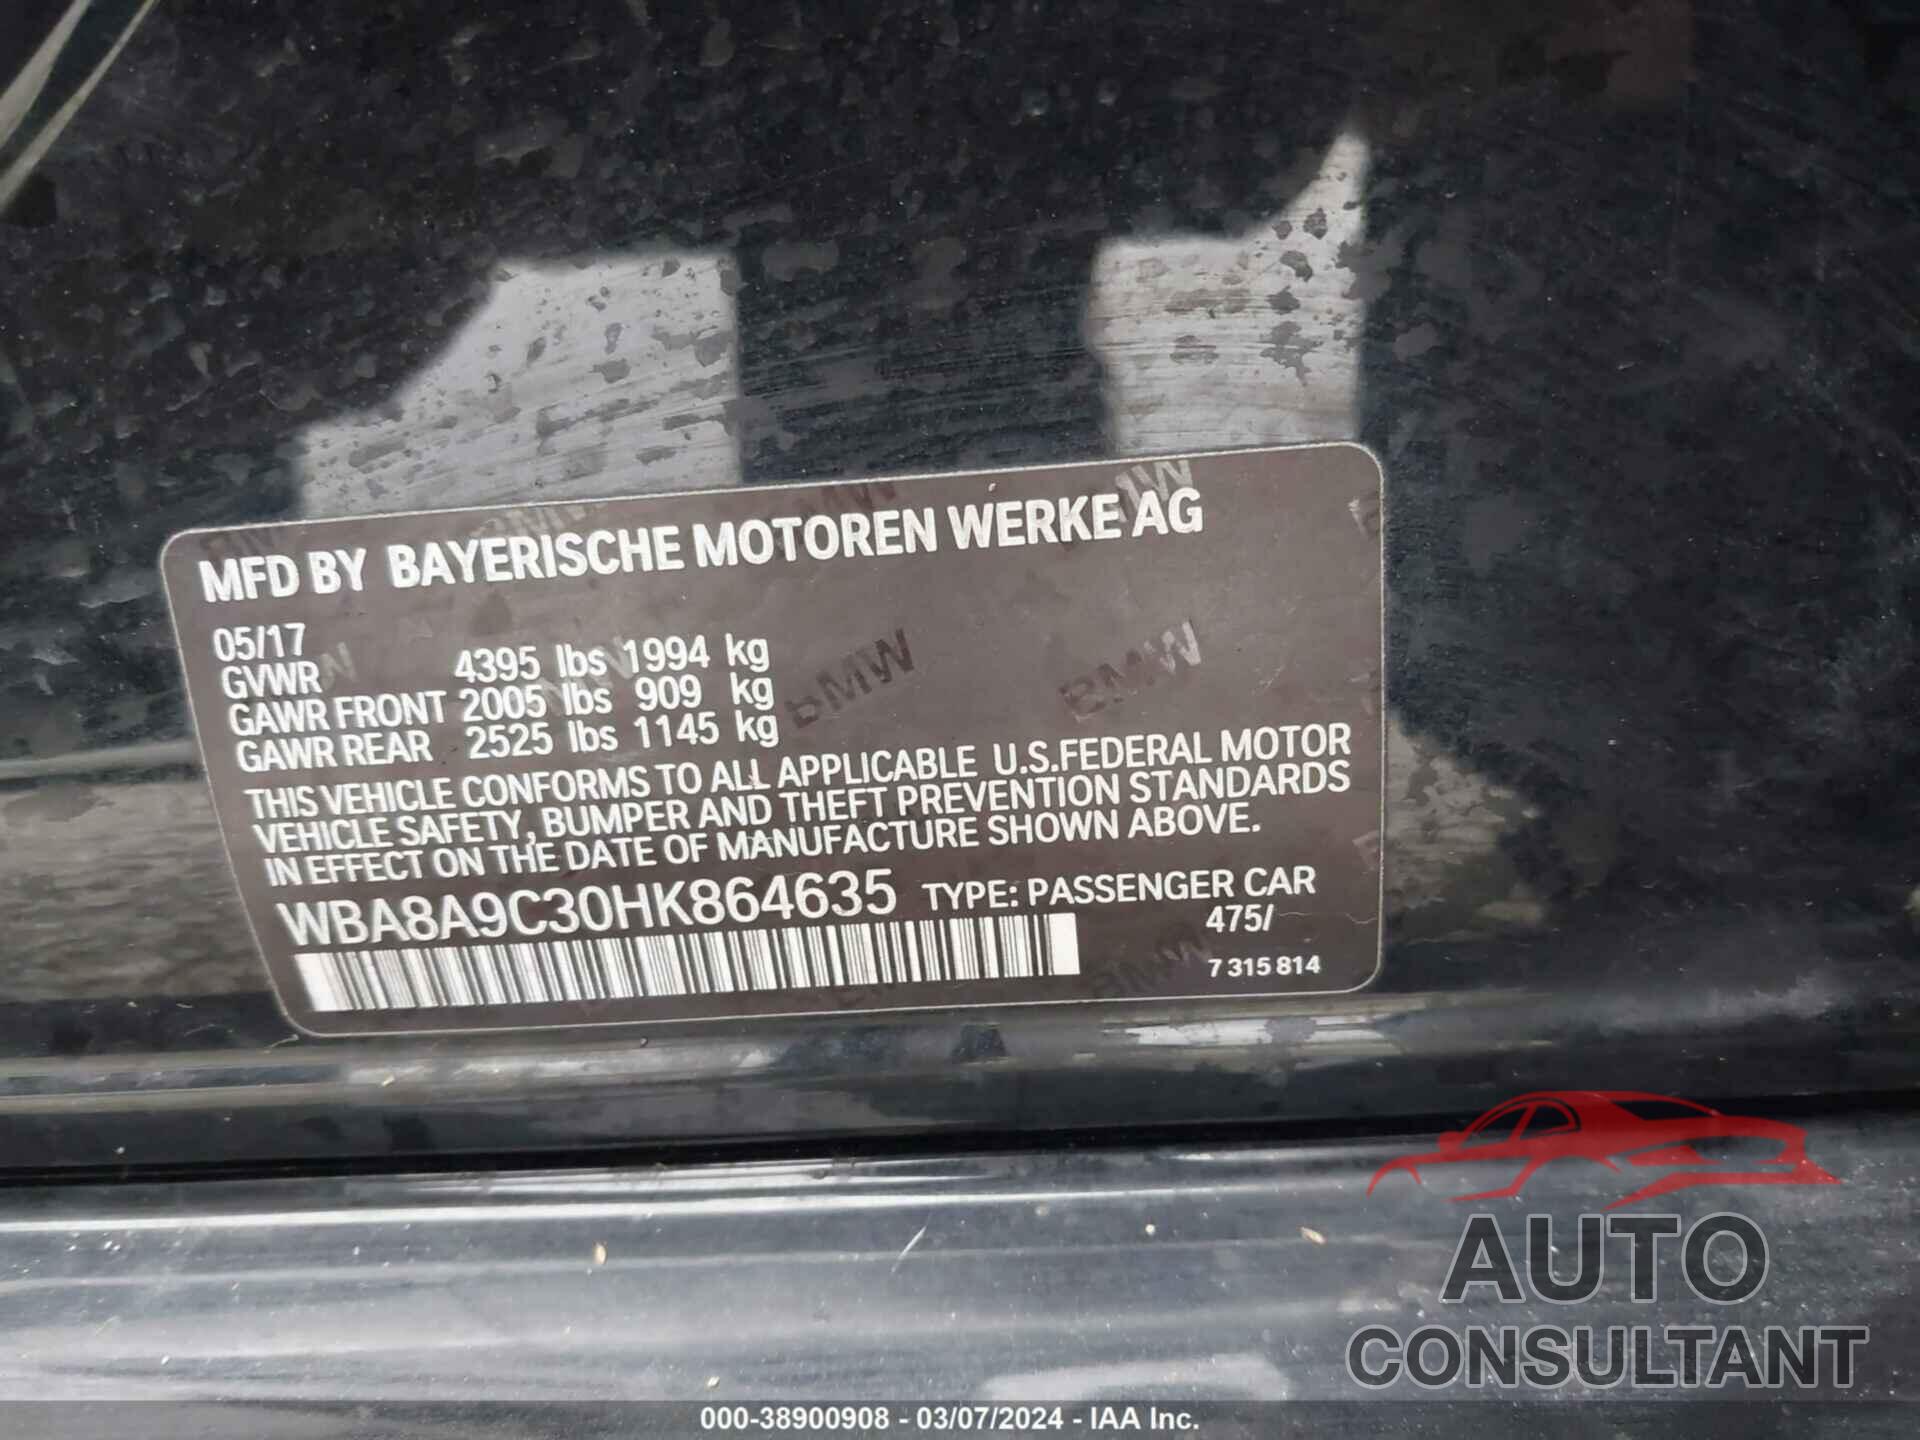 BMW 320I 2017 - WBA8A9C30HK864635